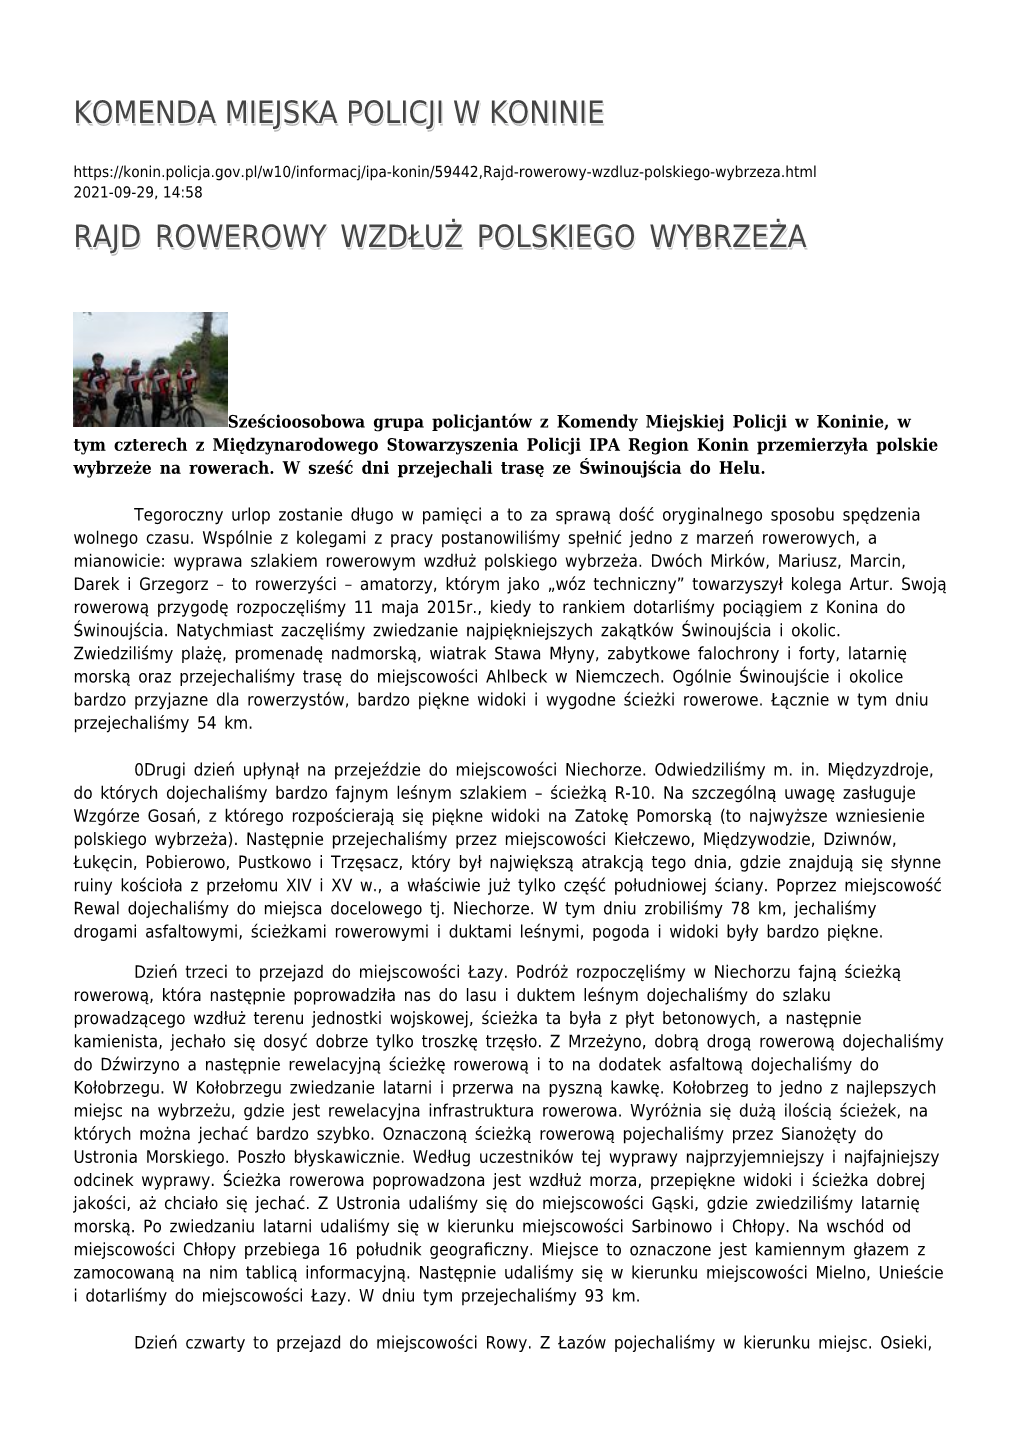 Rajd Rowerowy Wzdłuż Polskiego Wybrzeża